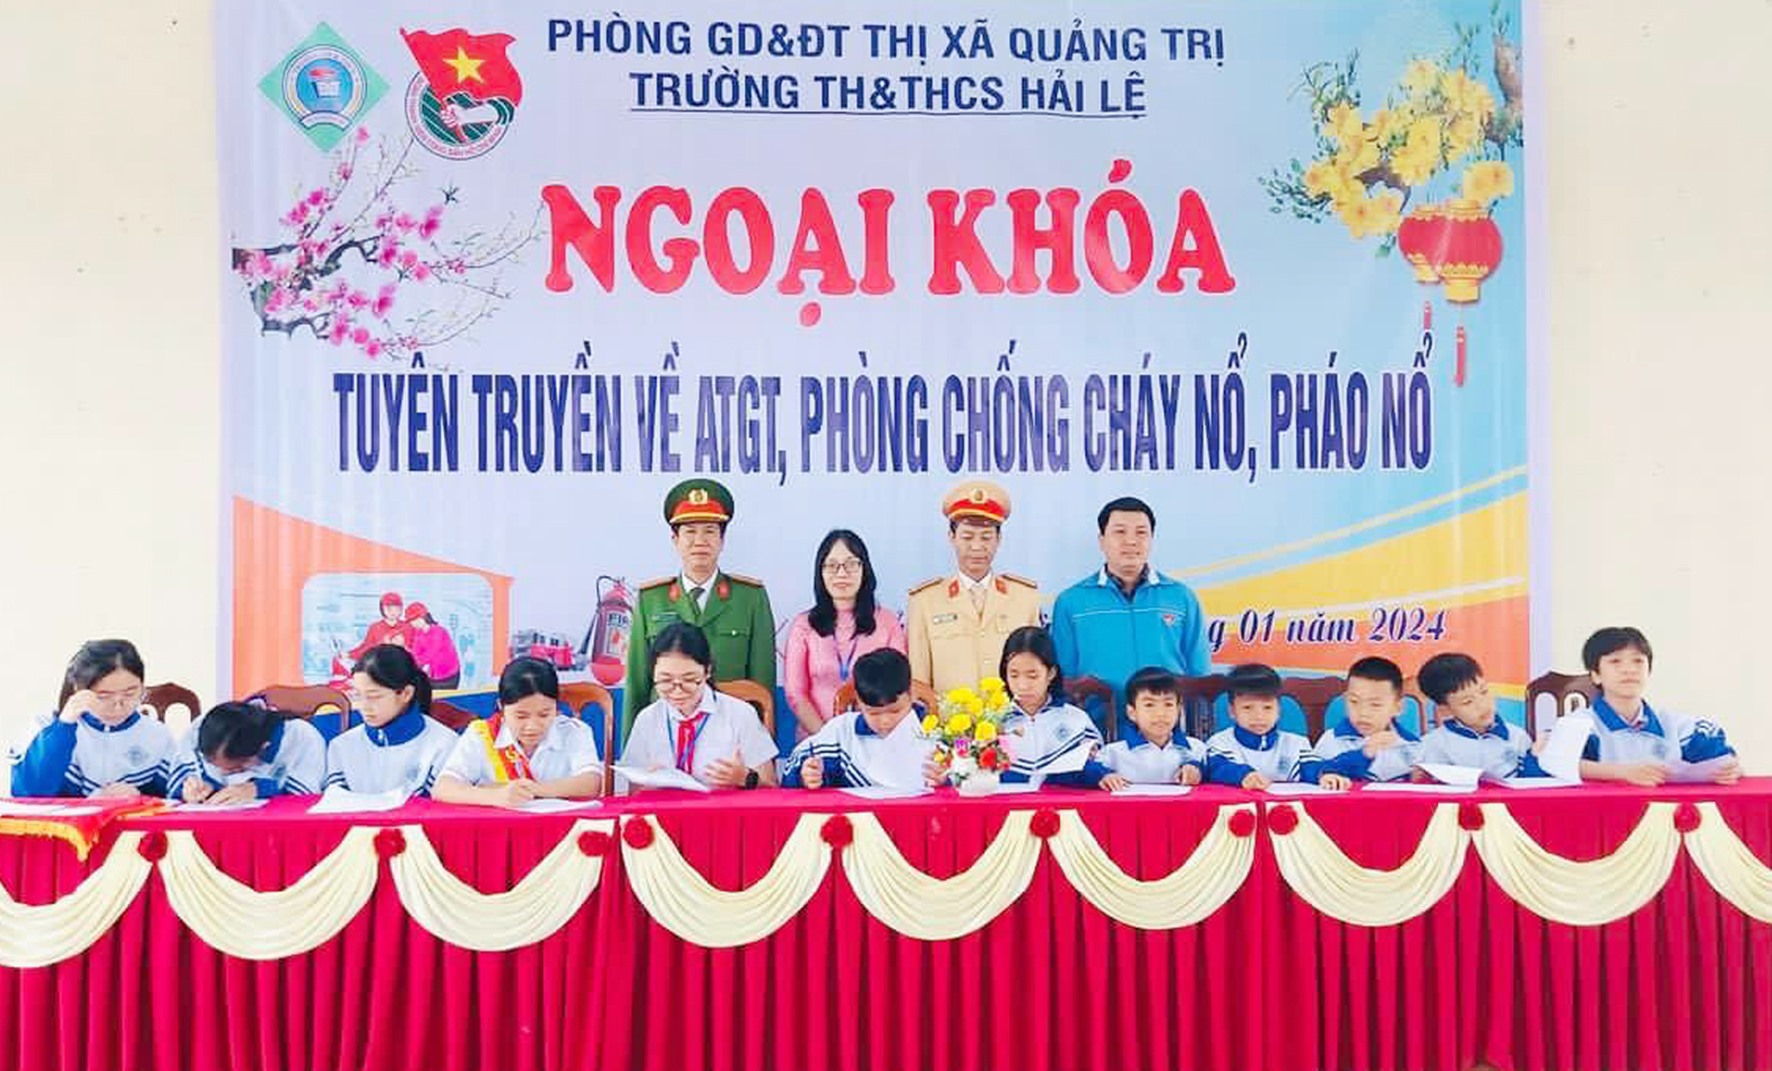 Trường Tiểu học và THCS Hải Lệ, thị xã Quảng Trị ký cam kết tuyên truyền an toàn giao thông, phòng chống cháy nổ, pháo nổ dịp Tết -Ảnh: TÚ LINH